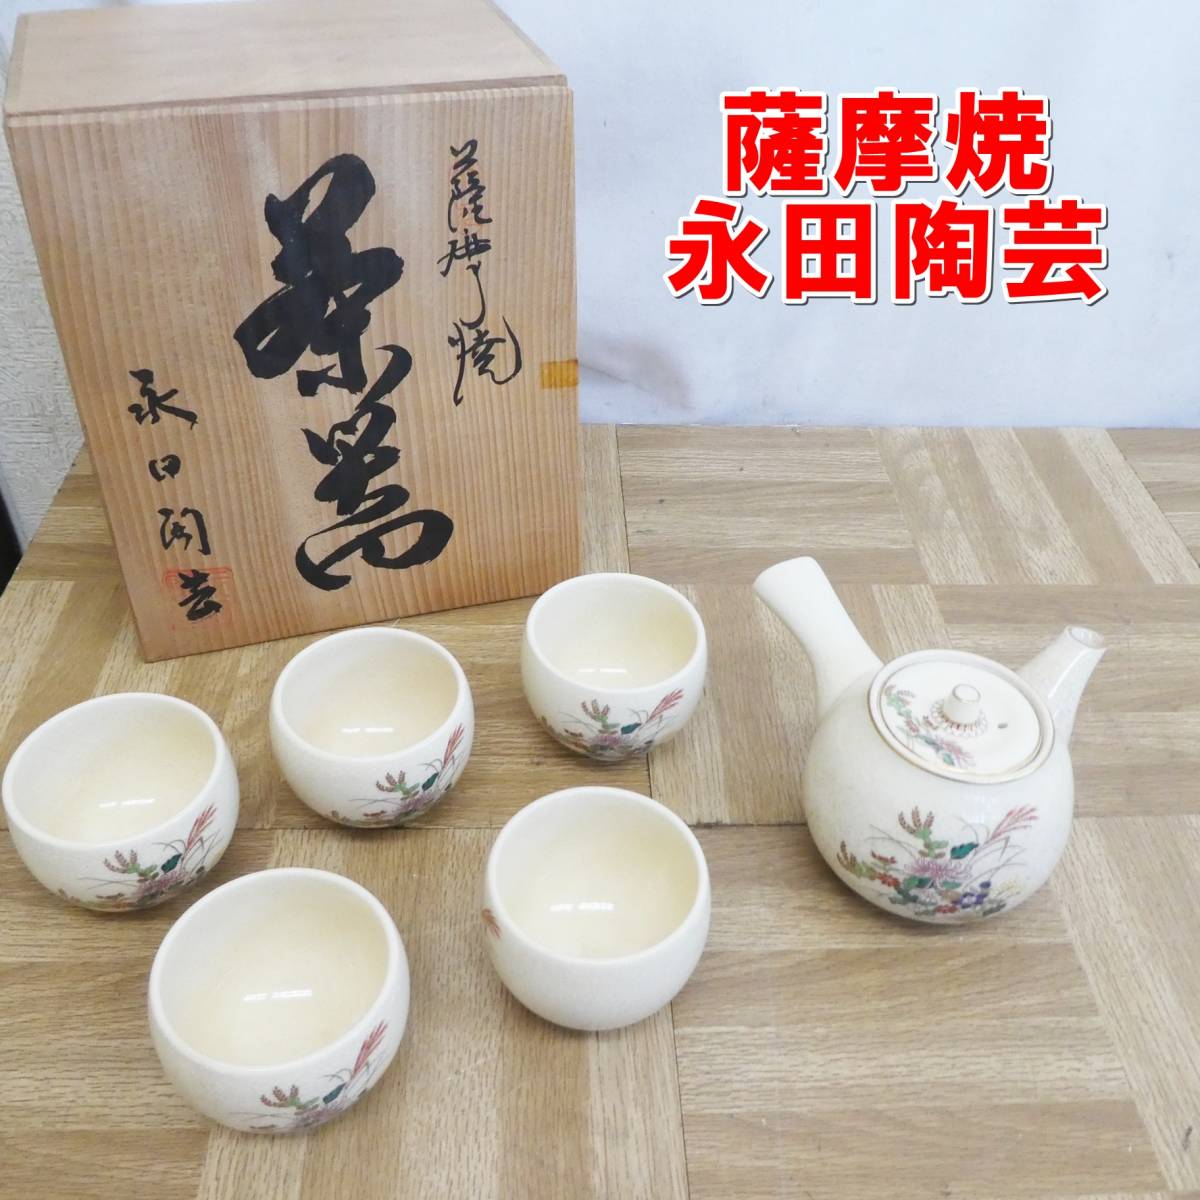 Yahoo!オークション -「煎茶器」(薩摩) (日本の陶磁)の落札相場・落札価格